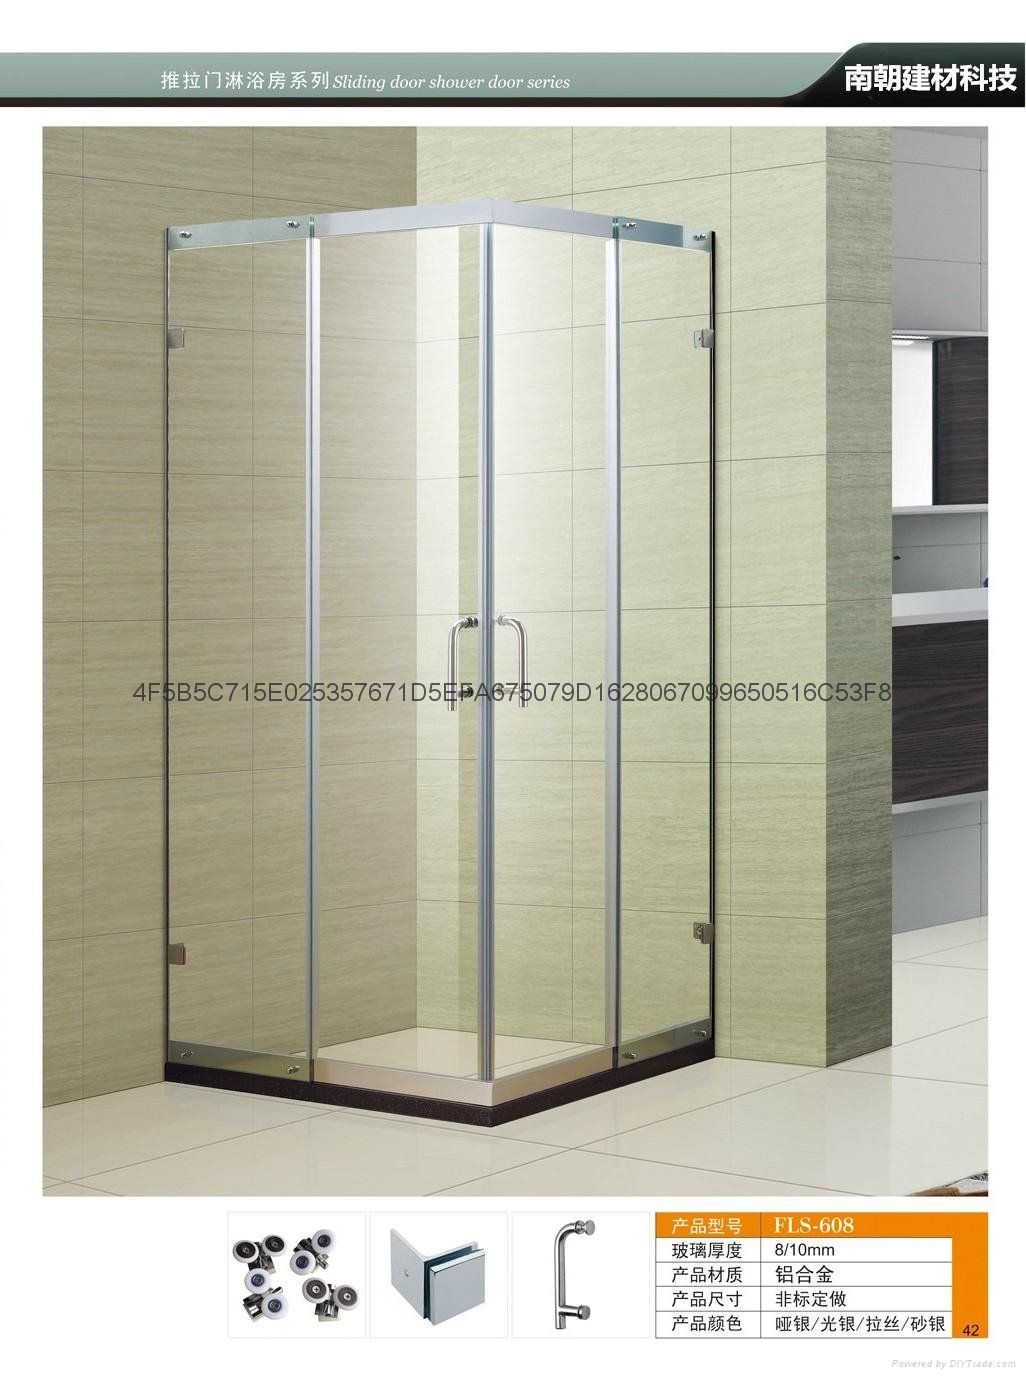 FS-608 淋浴房 整体浴室钢化玻璃定制浴屏隔断移门沐浴房简易淋浴房 2